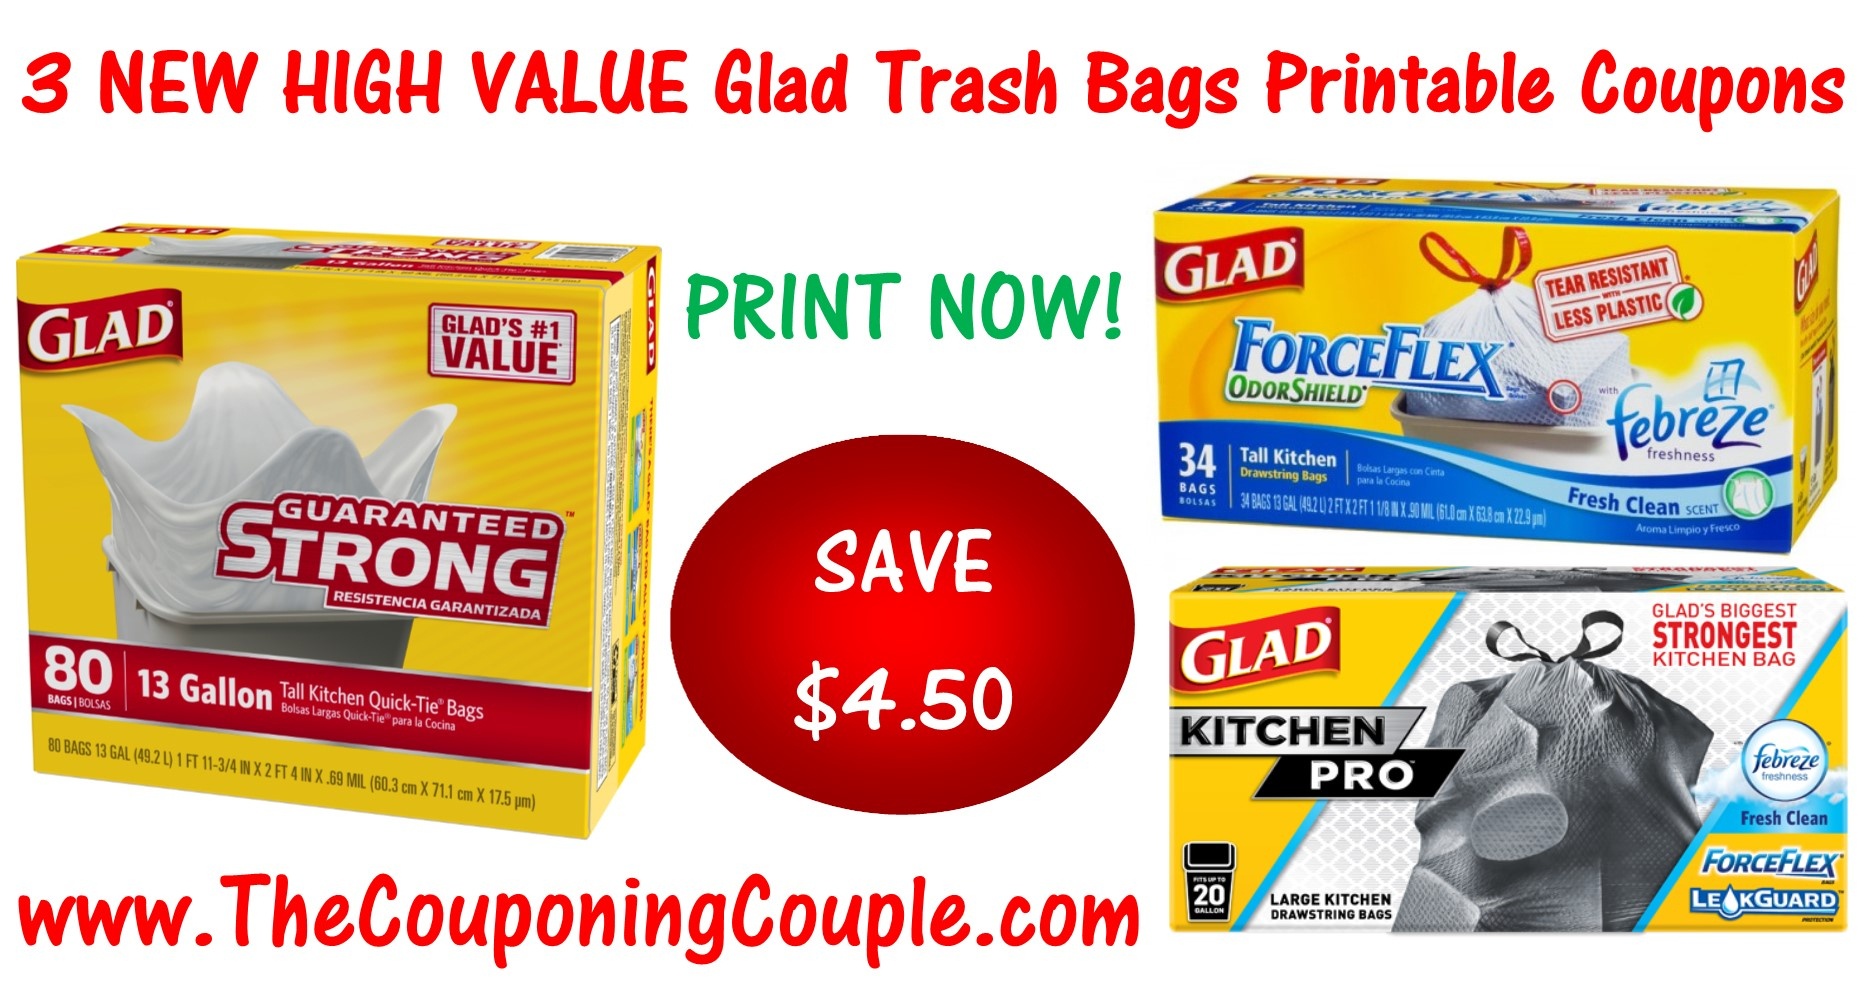 3 New Glad Trash Bag Printable Coupons ~ Save $4.50! - Free Printable Coupons For Trash Bags